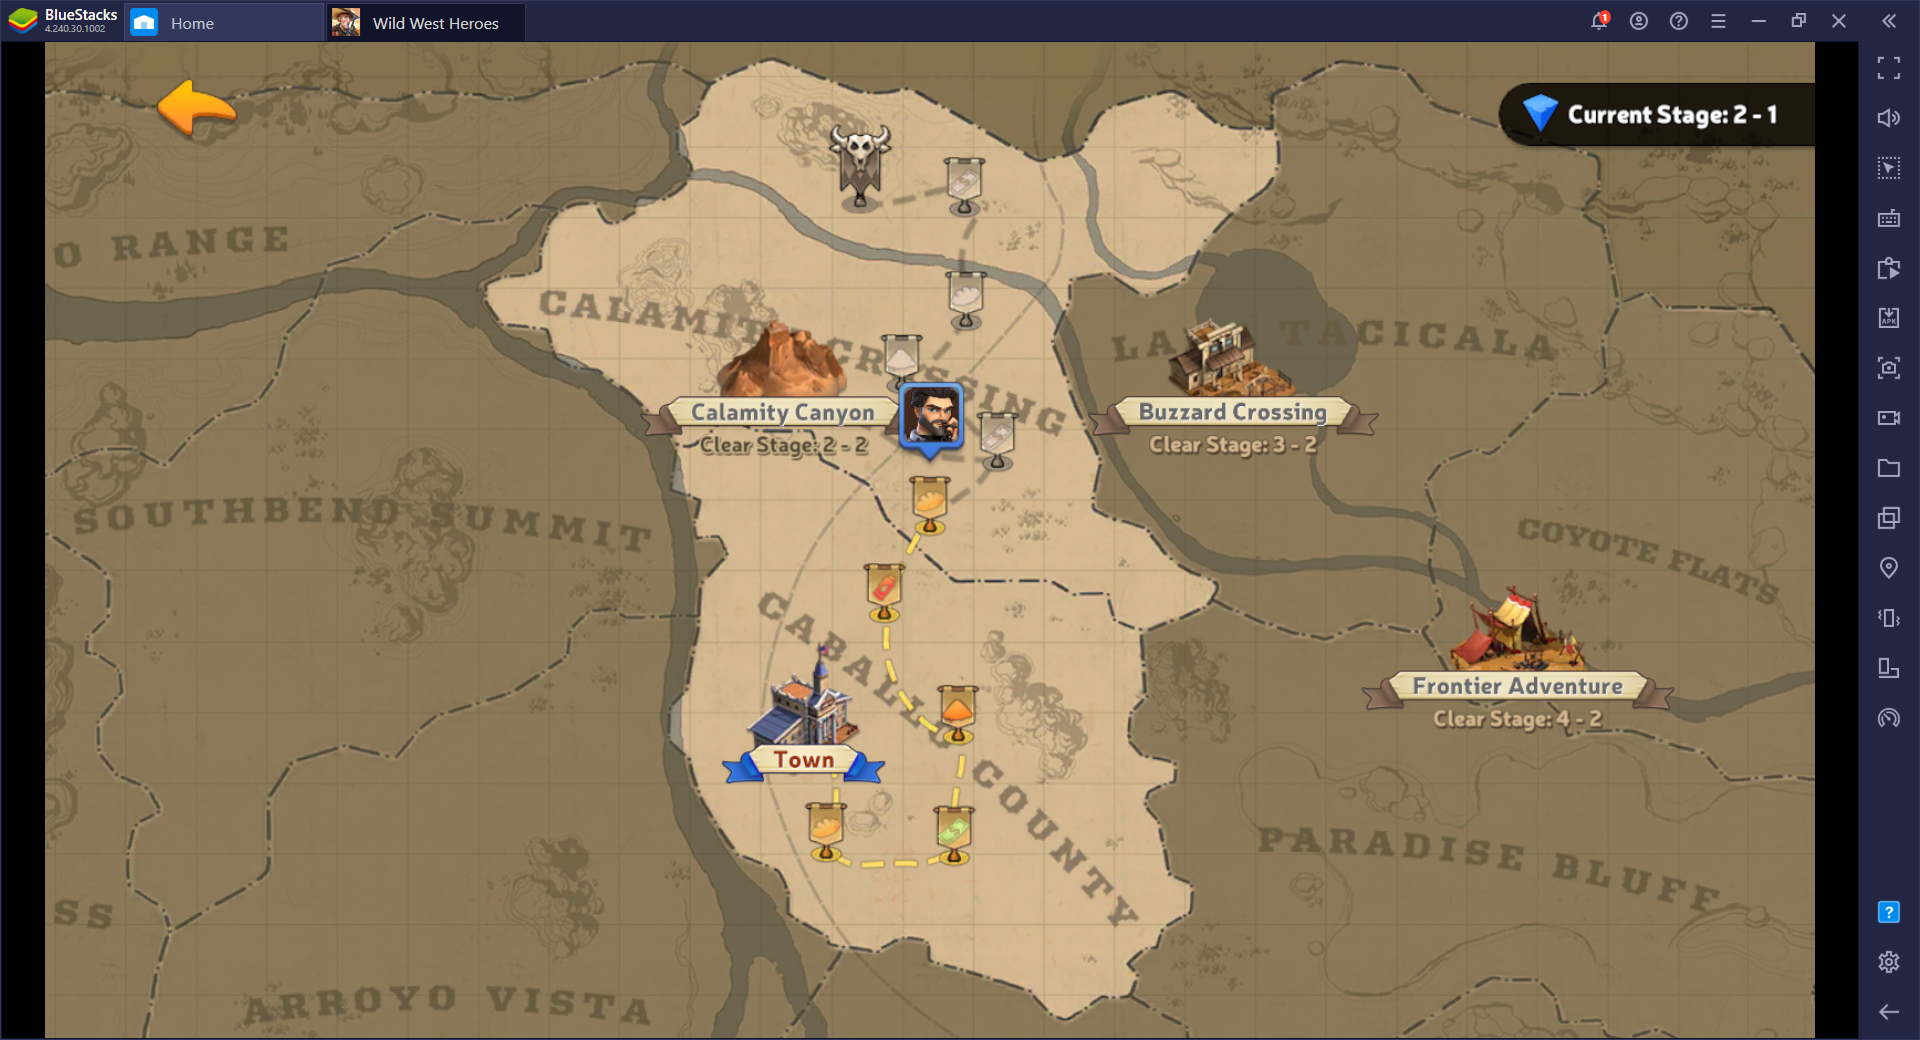 Selamatkan Wild West - Cara Main Wild West Heroes di PC dengan BlueStacks